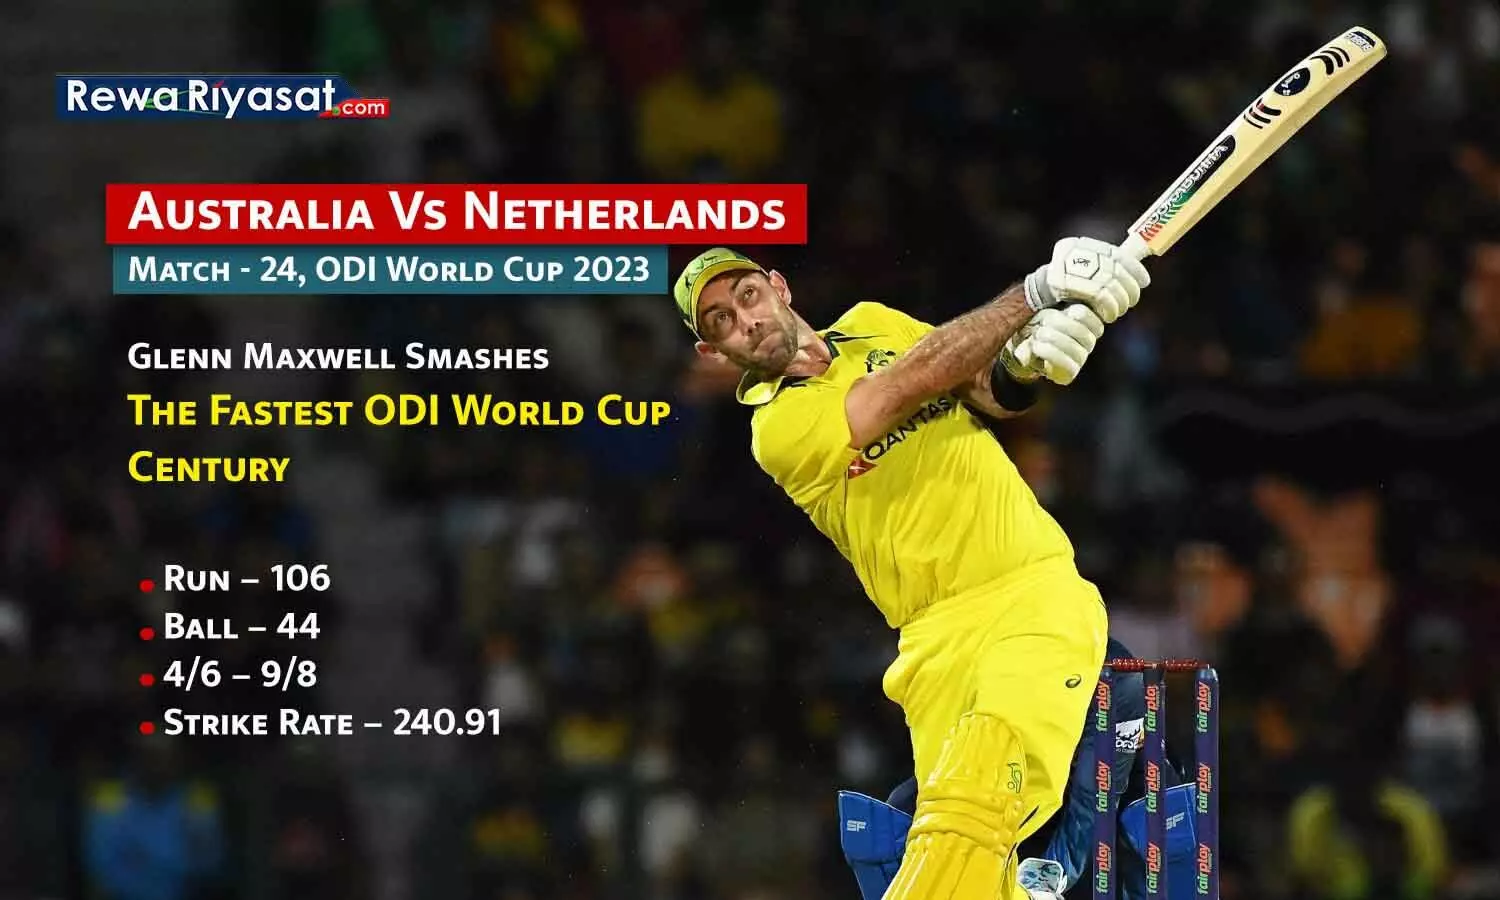 वर्ल्ड कप में सबसे बड़ी जीत और सबसे तेज शतक: ऑस्ट्रेलिया ने नीदरलैंड को 309 रन से हराया, मैक्सवेल ने विश्वकप का सबसे तेज शतक जड़ा